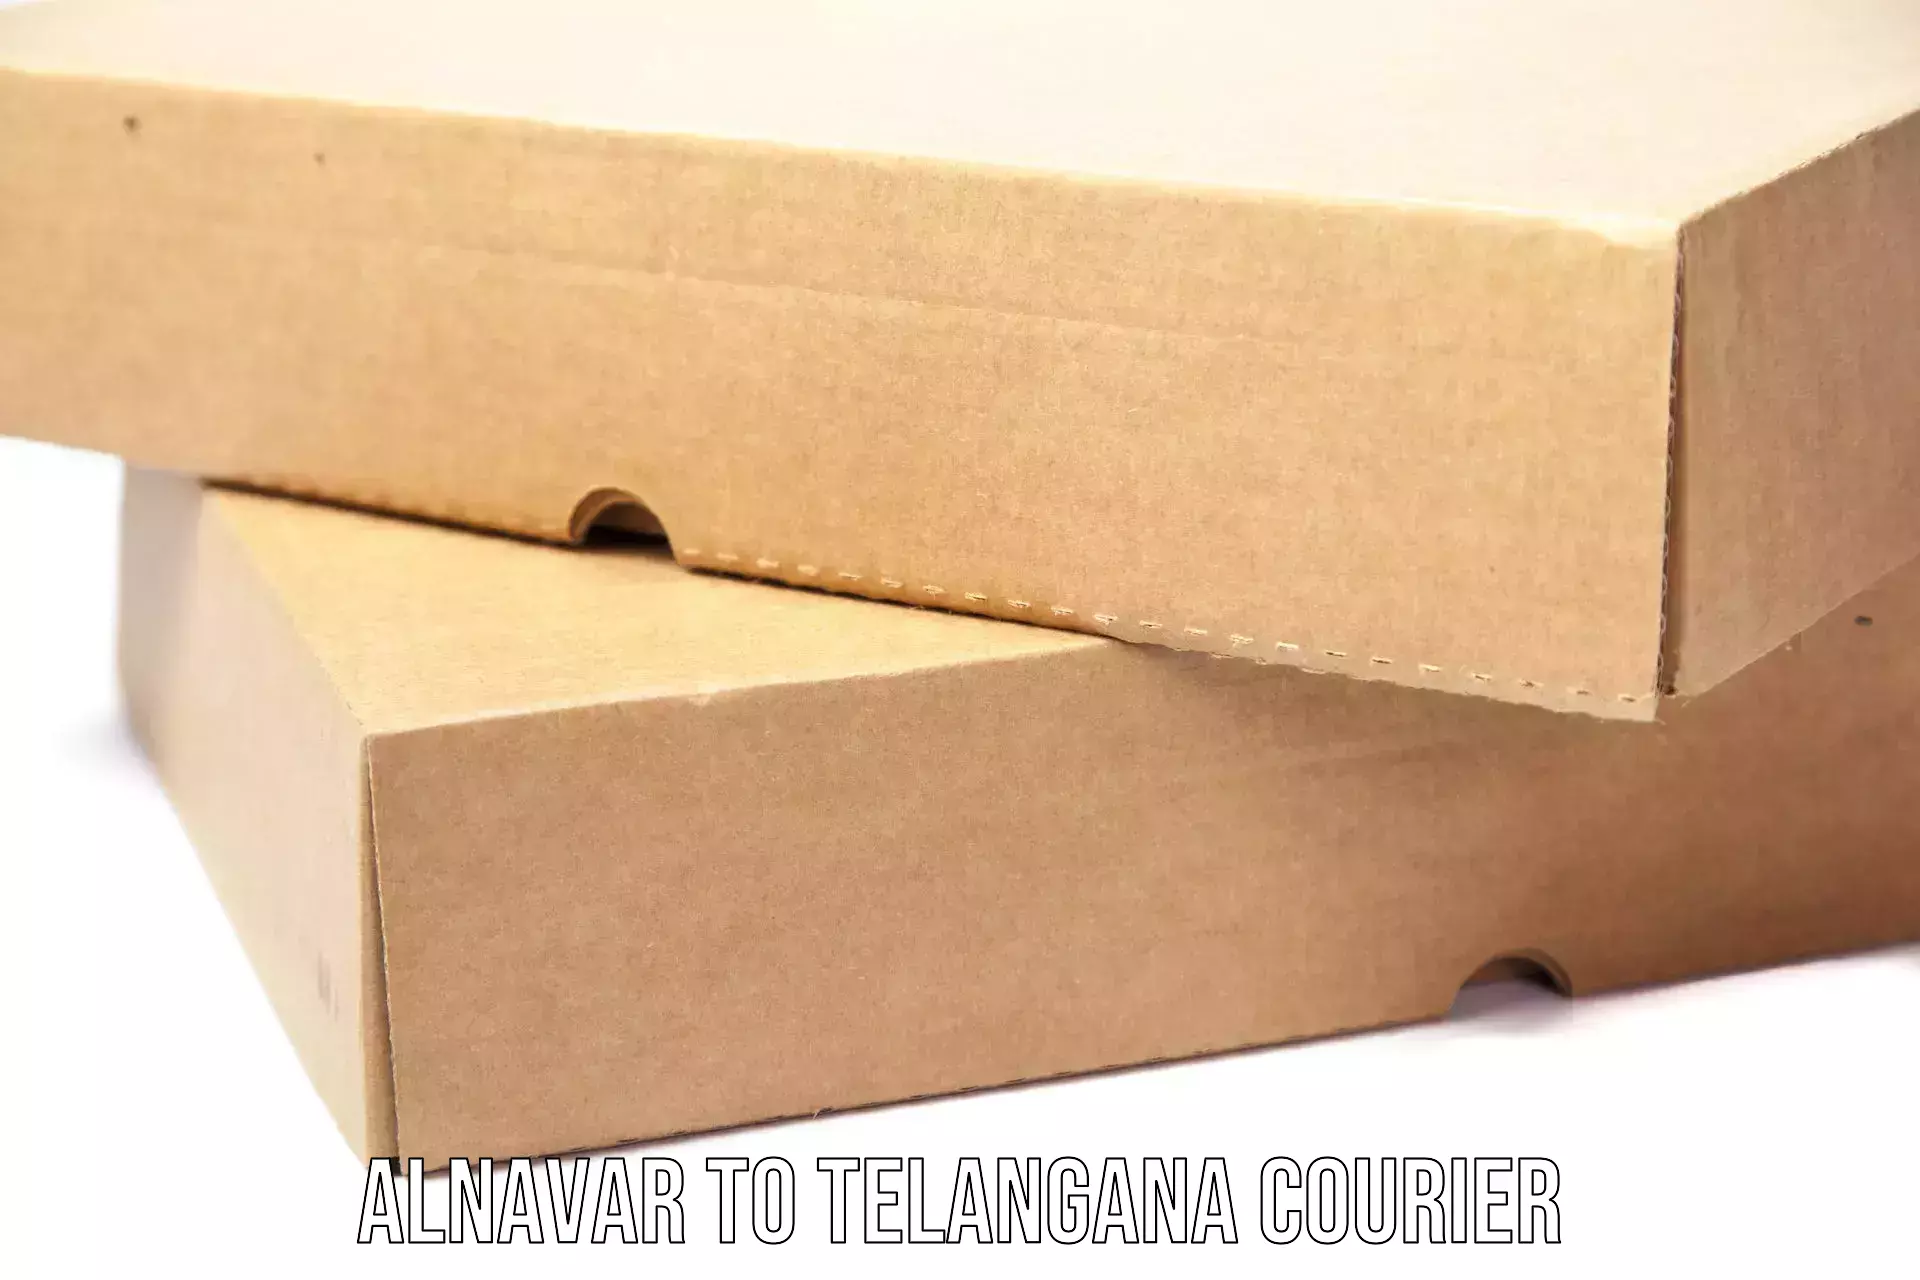 Premium courier solutions Alnavar to Telangana